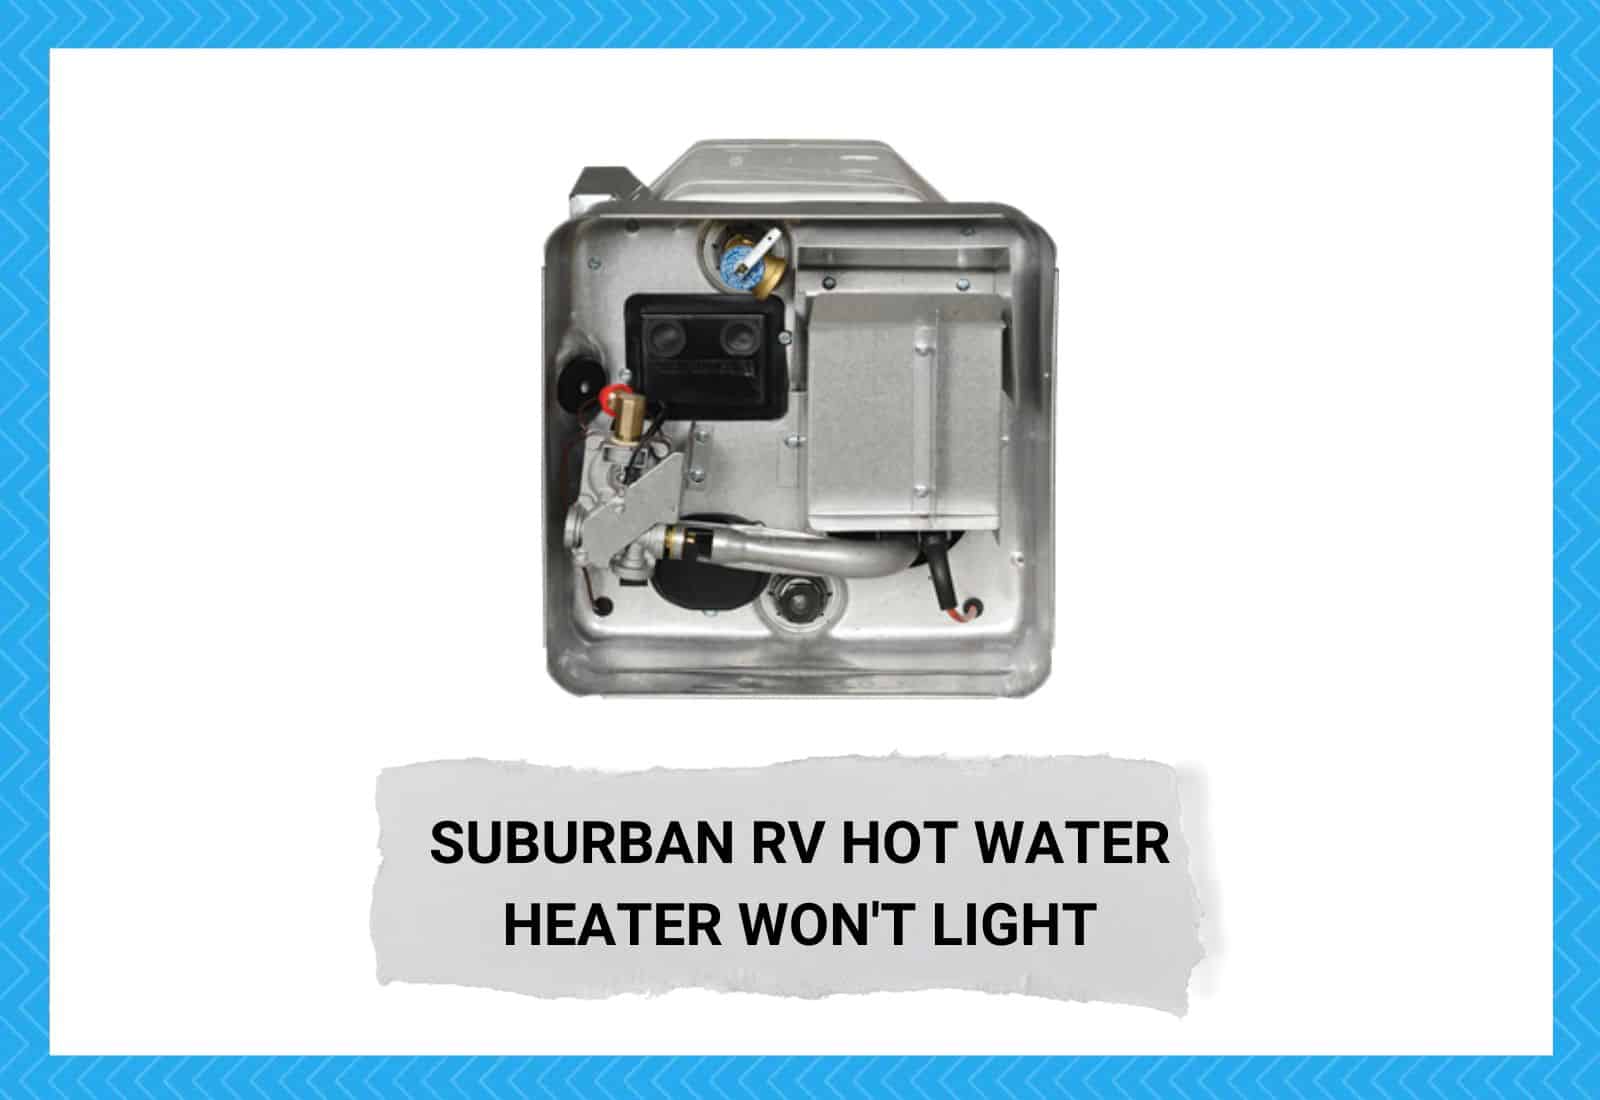 Suburban RV Hot Water Heater Won't Light